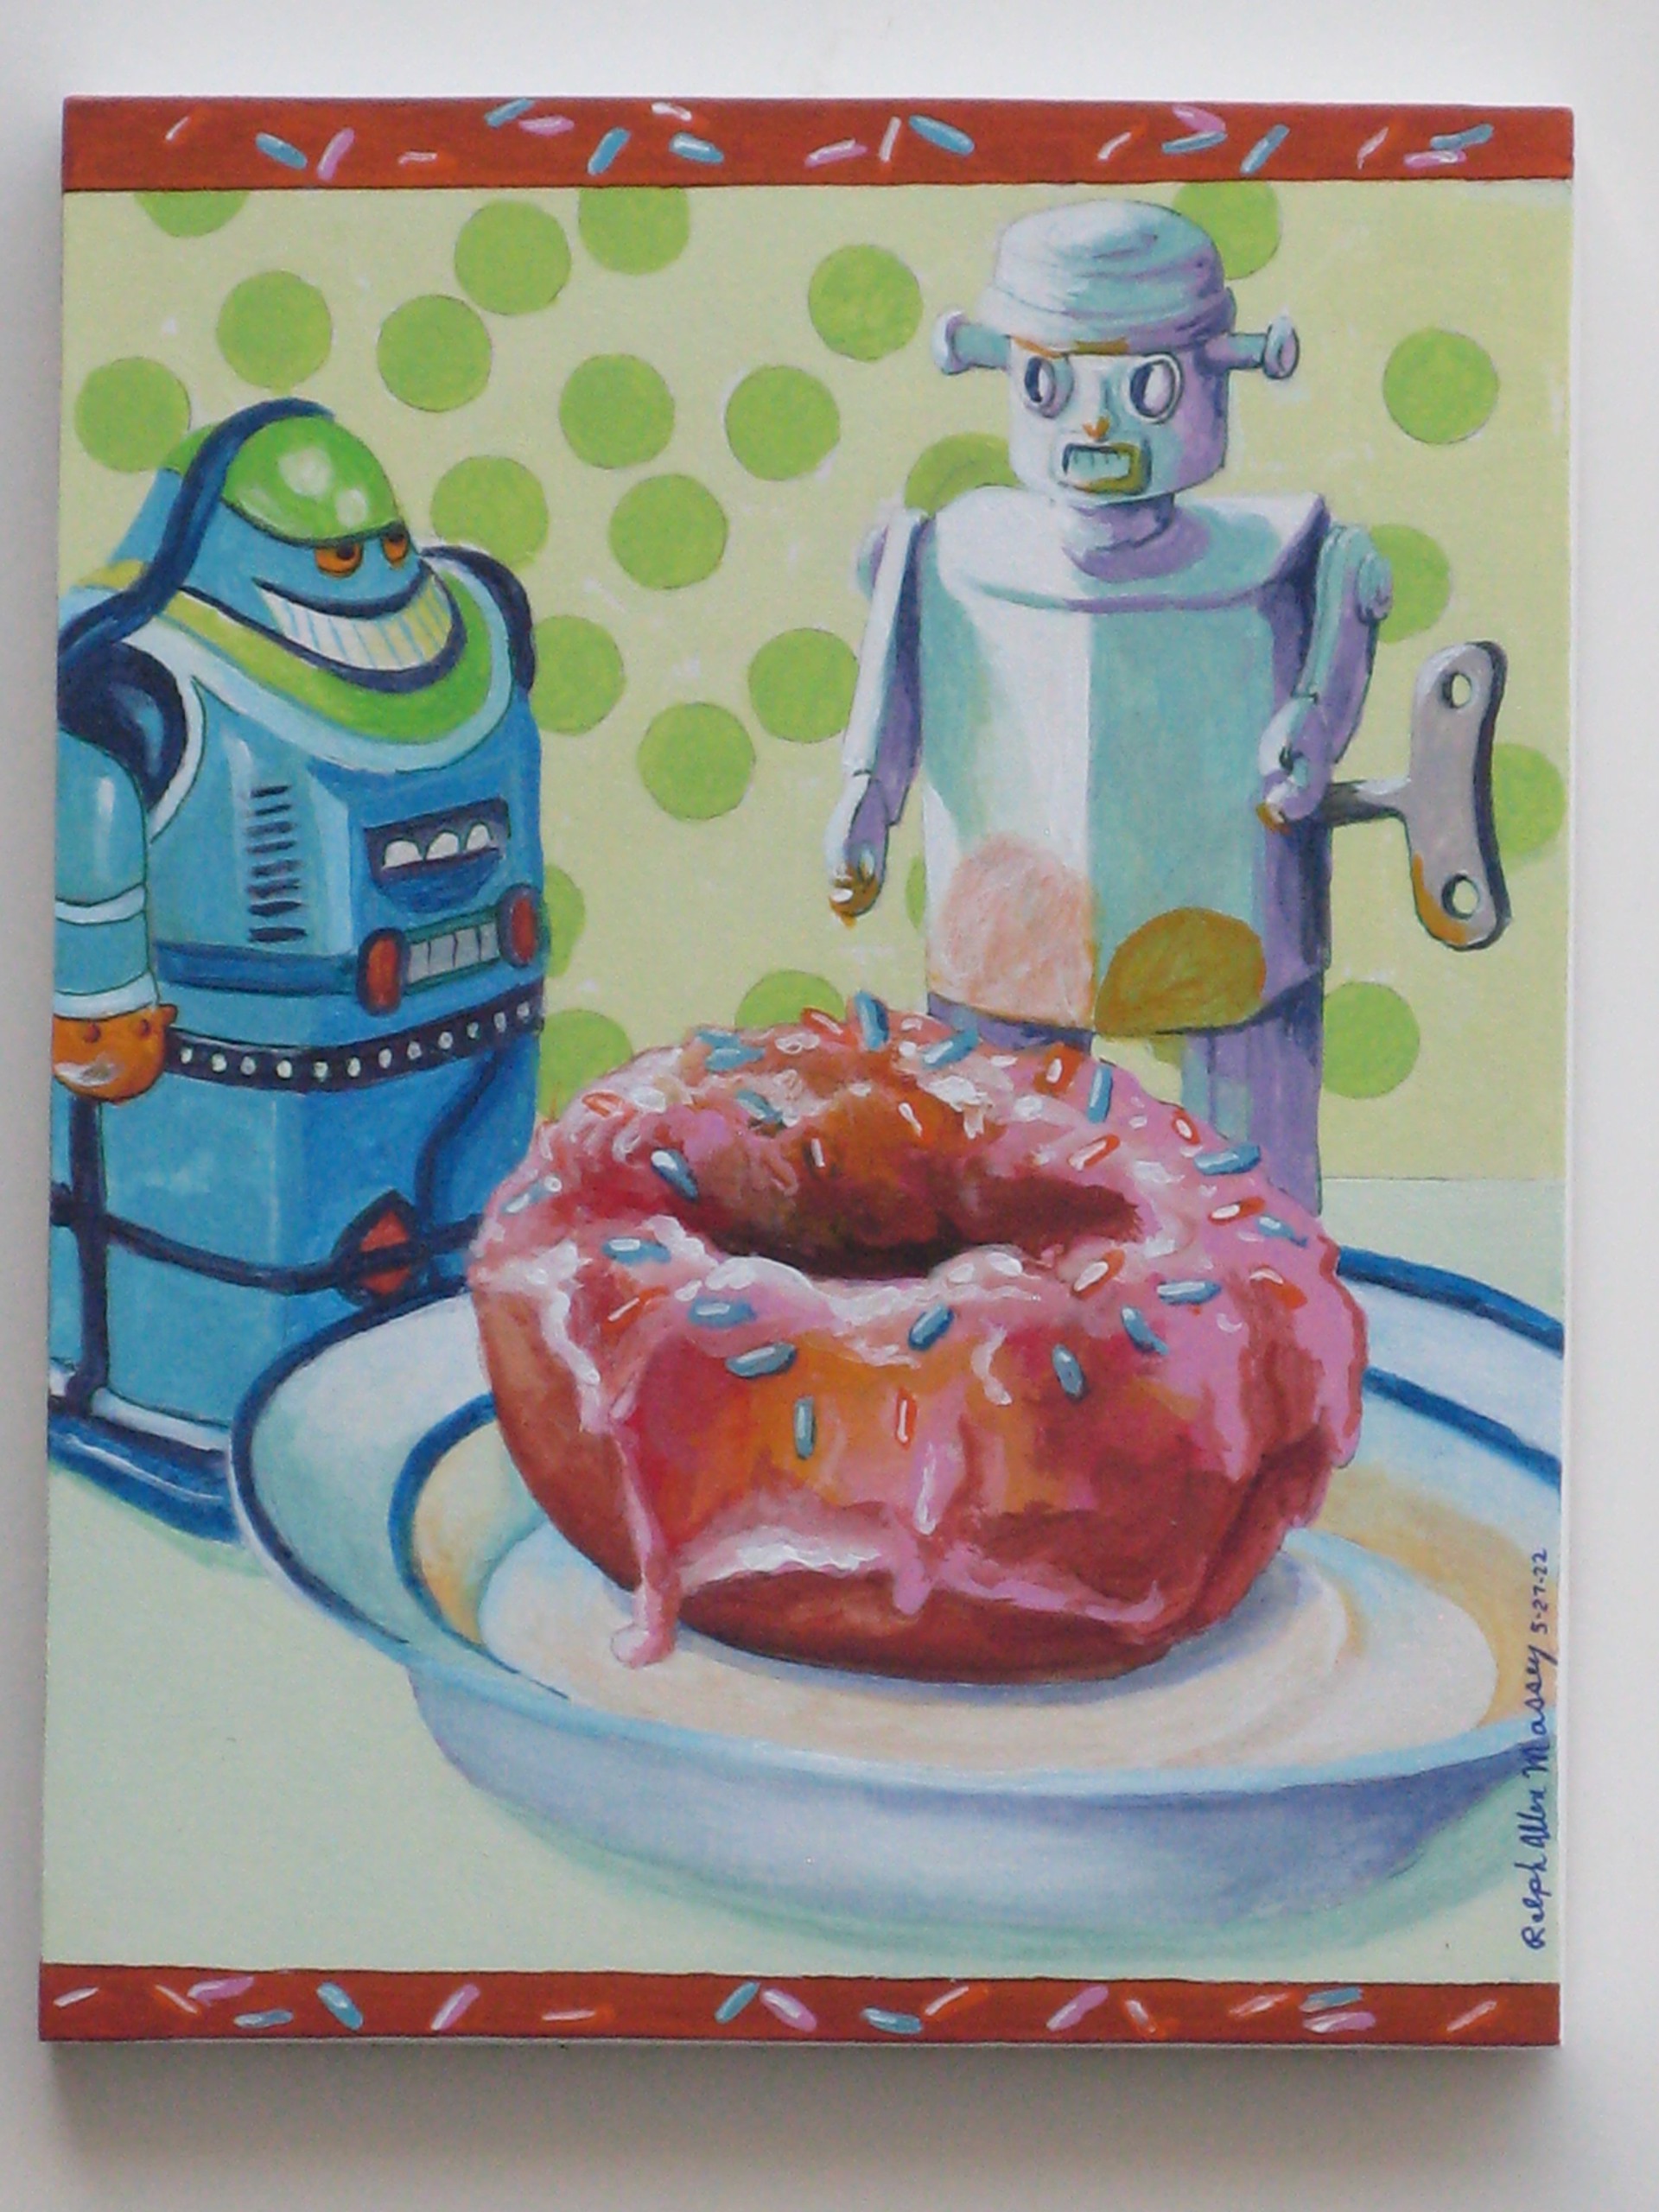 Doughnut Saga #1 offset #1 by Ralph Allen Massey